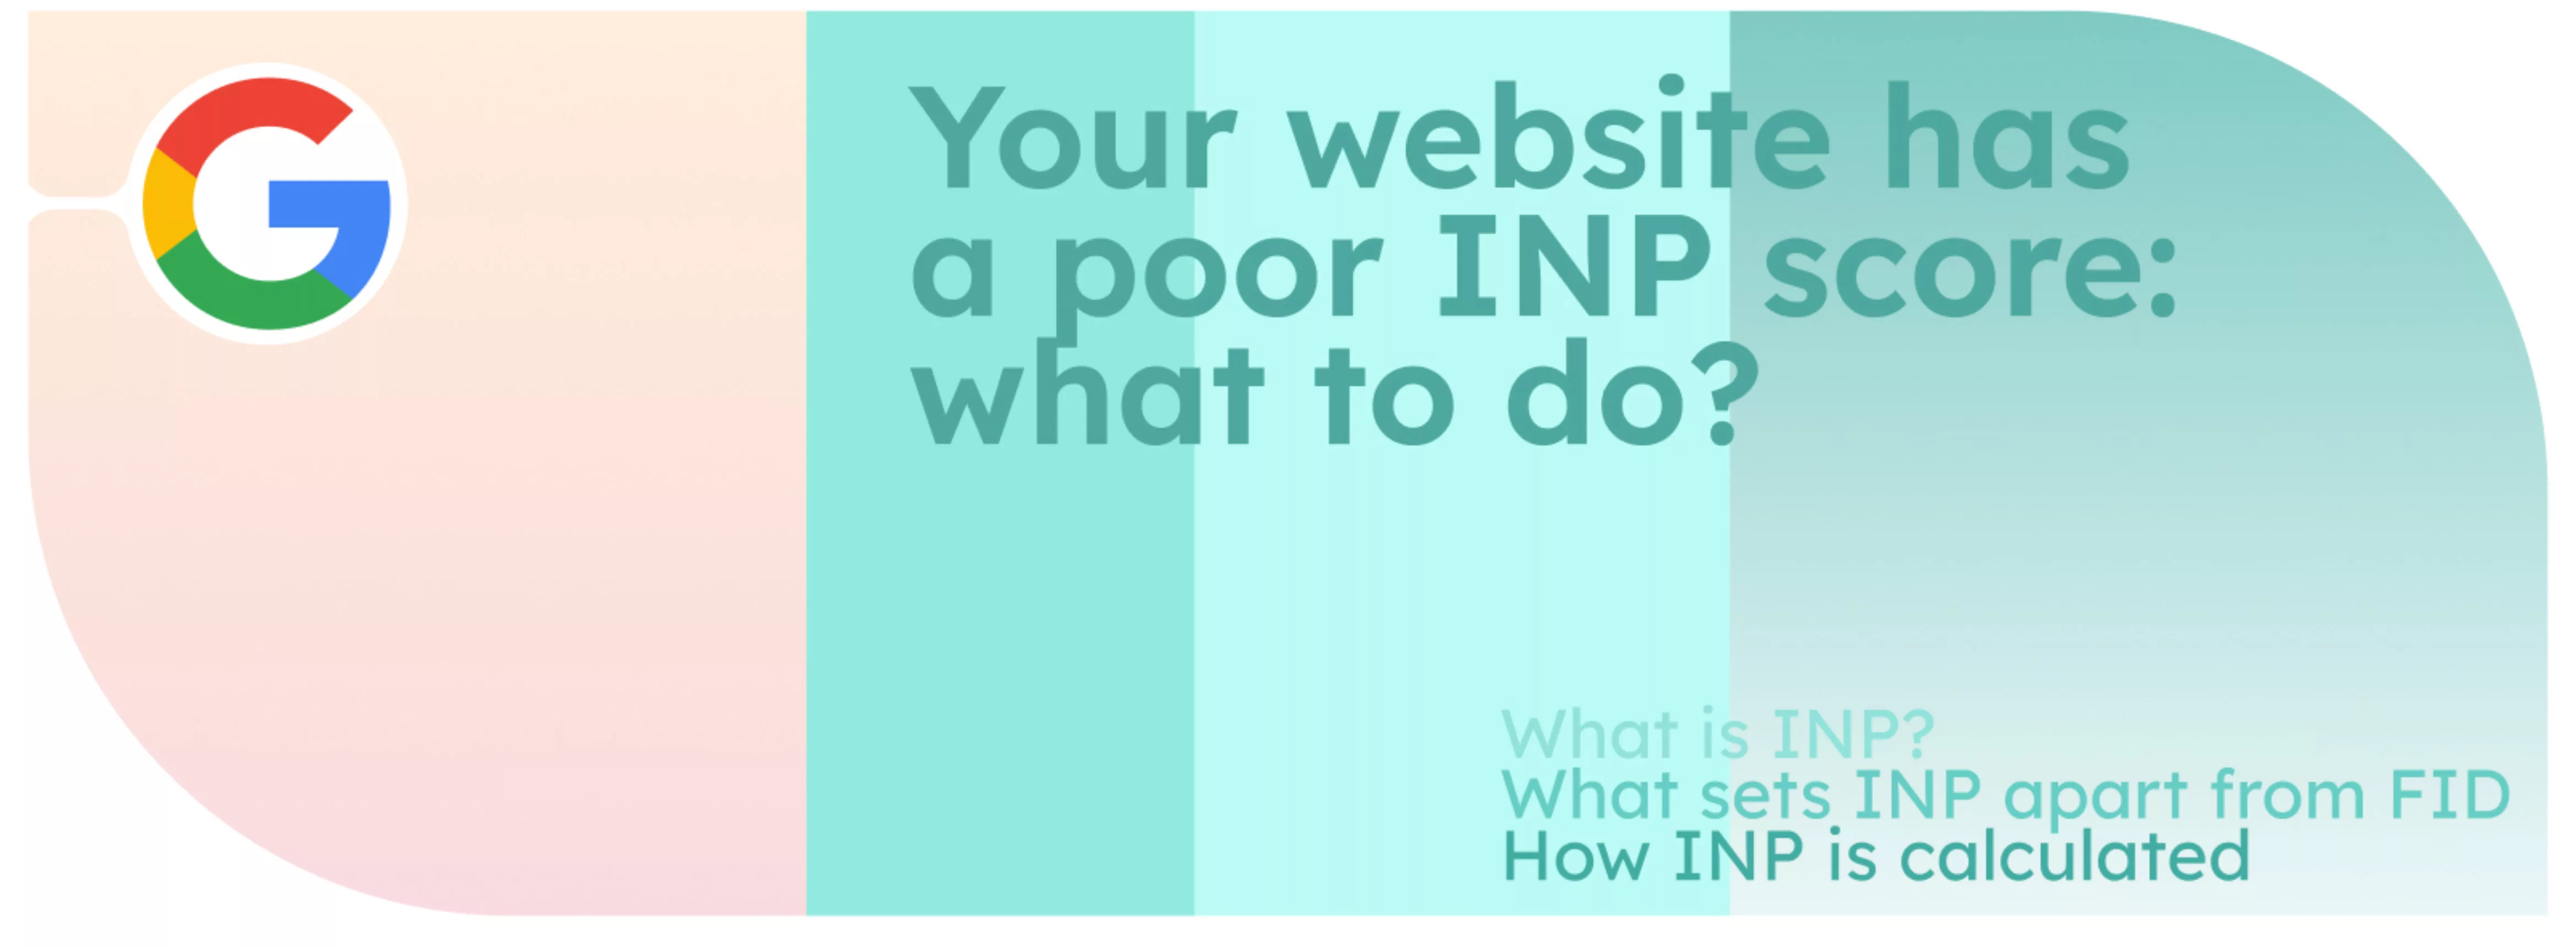 Il vostro sito web ha un punteggio INP basso: cosa fare?